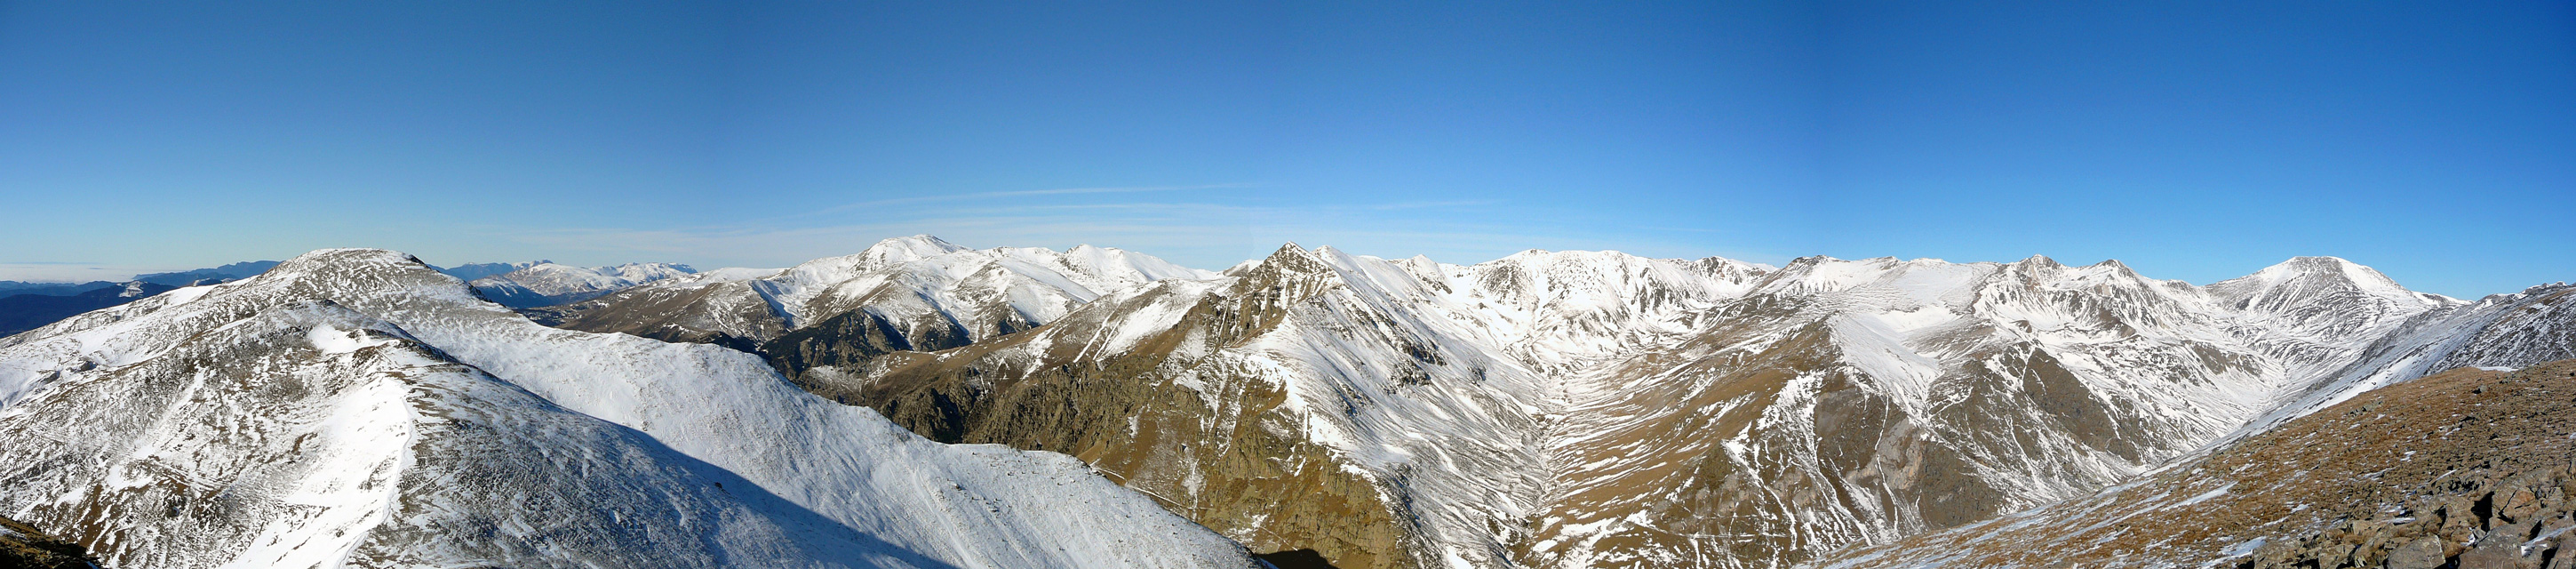 Balandrau (2584 m) - panorámica del Puigmal - Torrent de Coma de Vaca - Pic de l'Infern (2869 m) - Pic Fresser (2835 m) - Bastiments (2883 m)